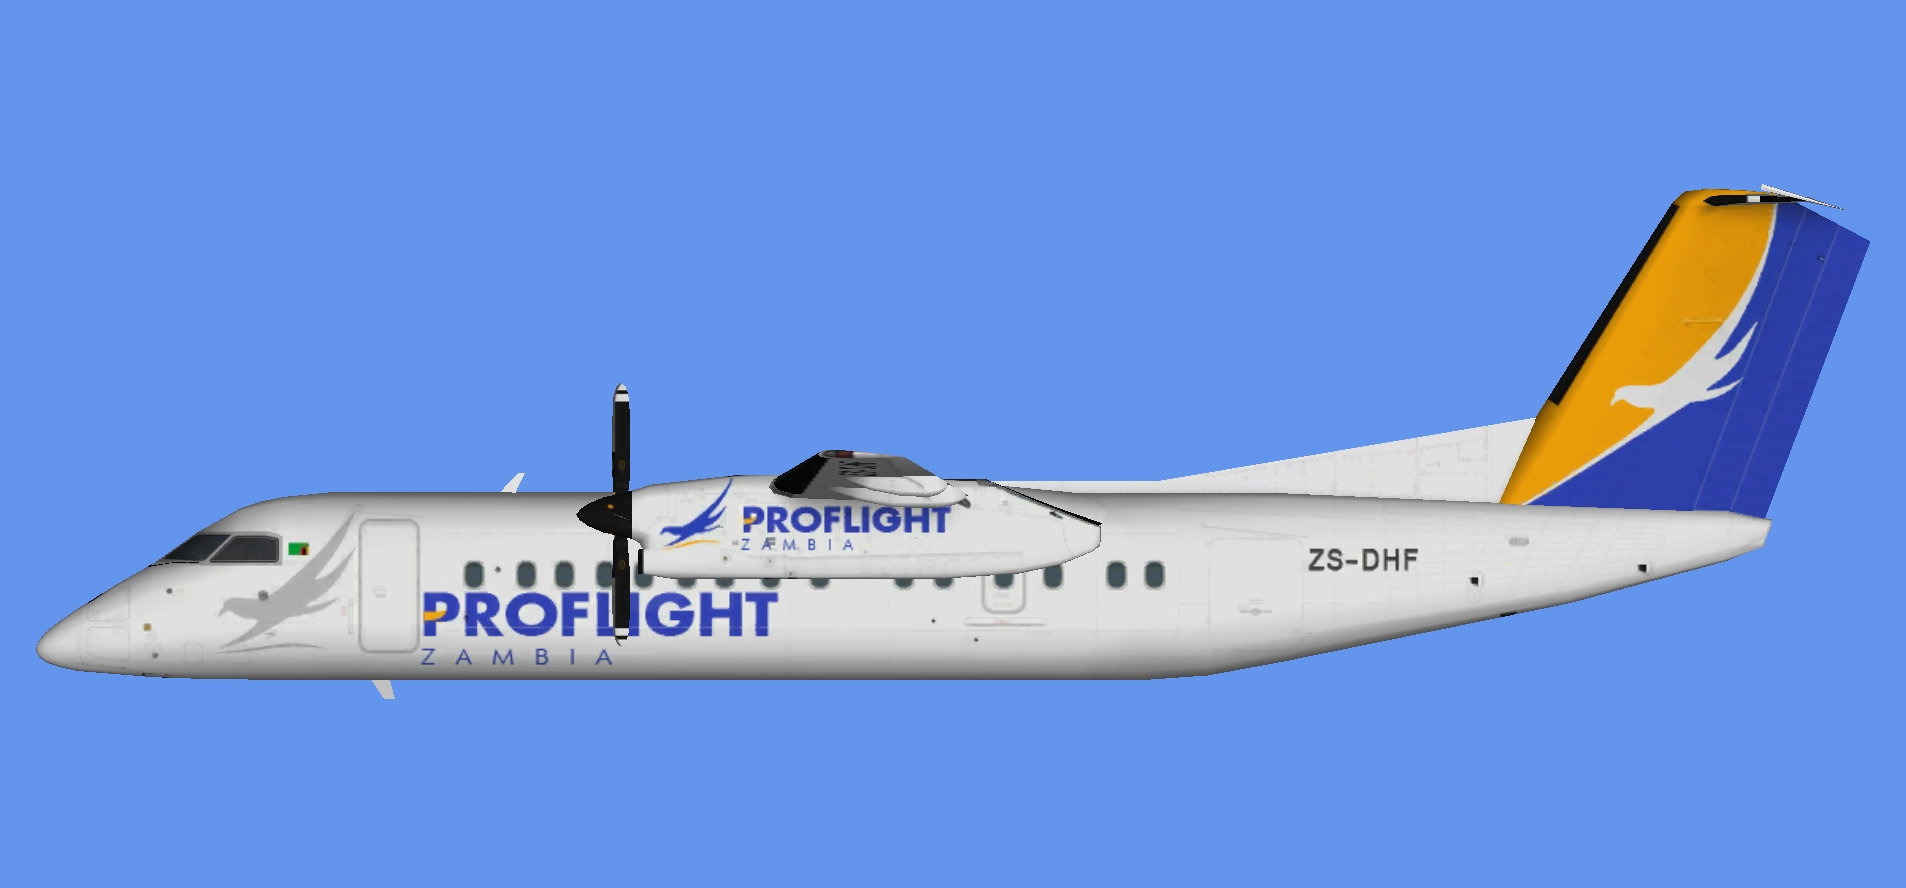 Proflight Zambia Dash 8-300